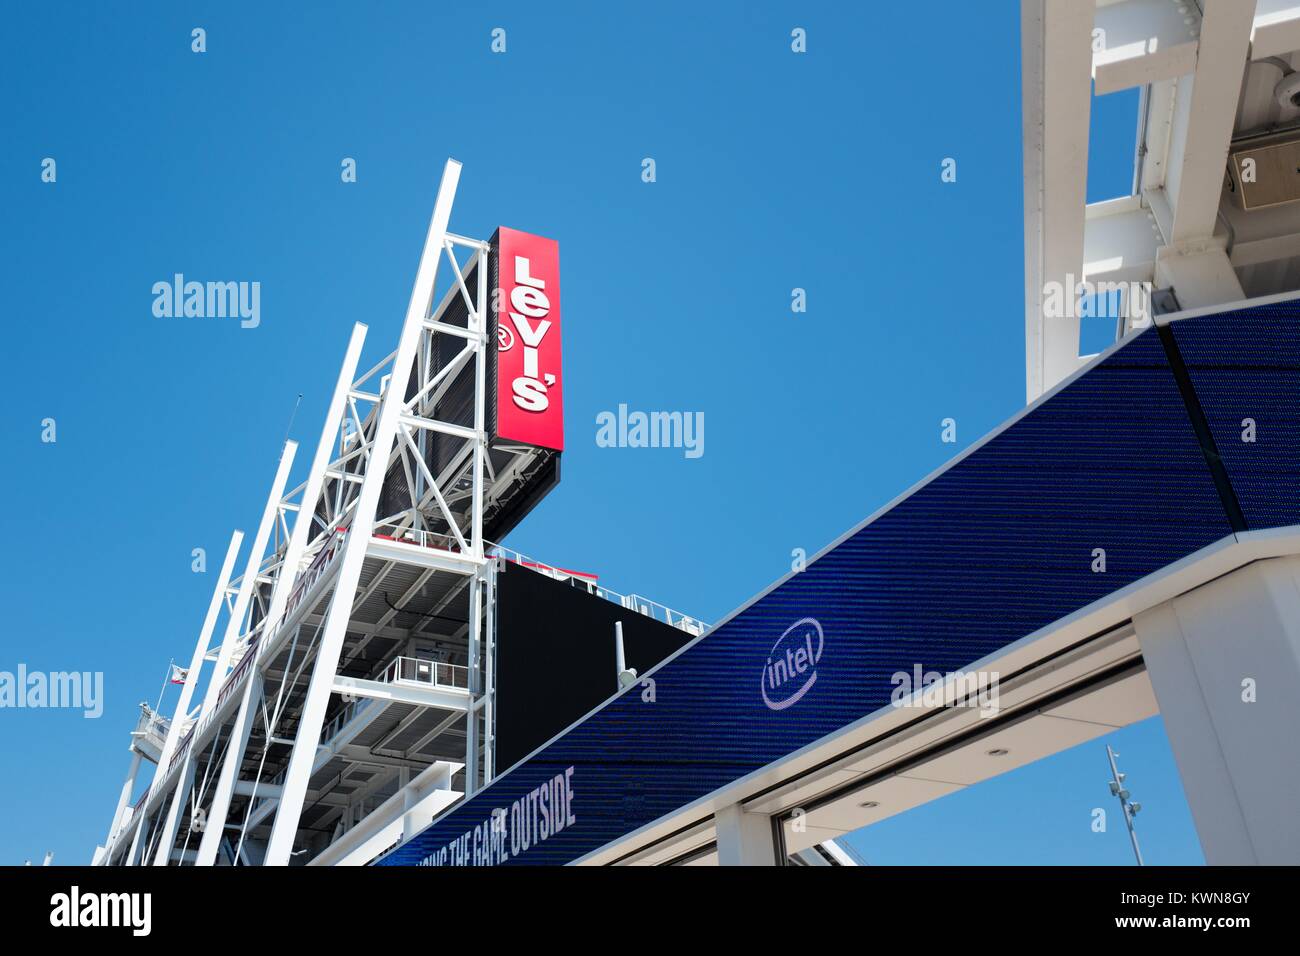 Signe mené avec logo Intel à Levi's Stadium, domicile de la San Francisco 49ers de l'équipe de football, dans la Silicon Valley ville de Santa Clara, Californie, 25 juillet 2017. Banque D'Images